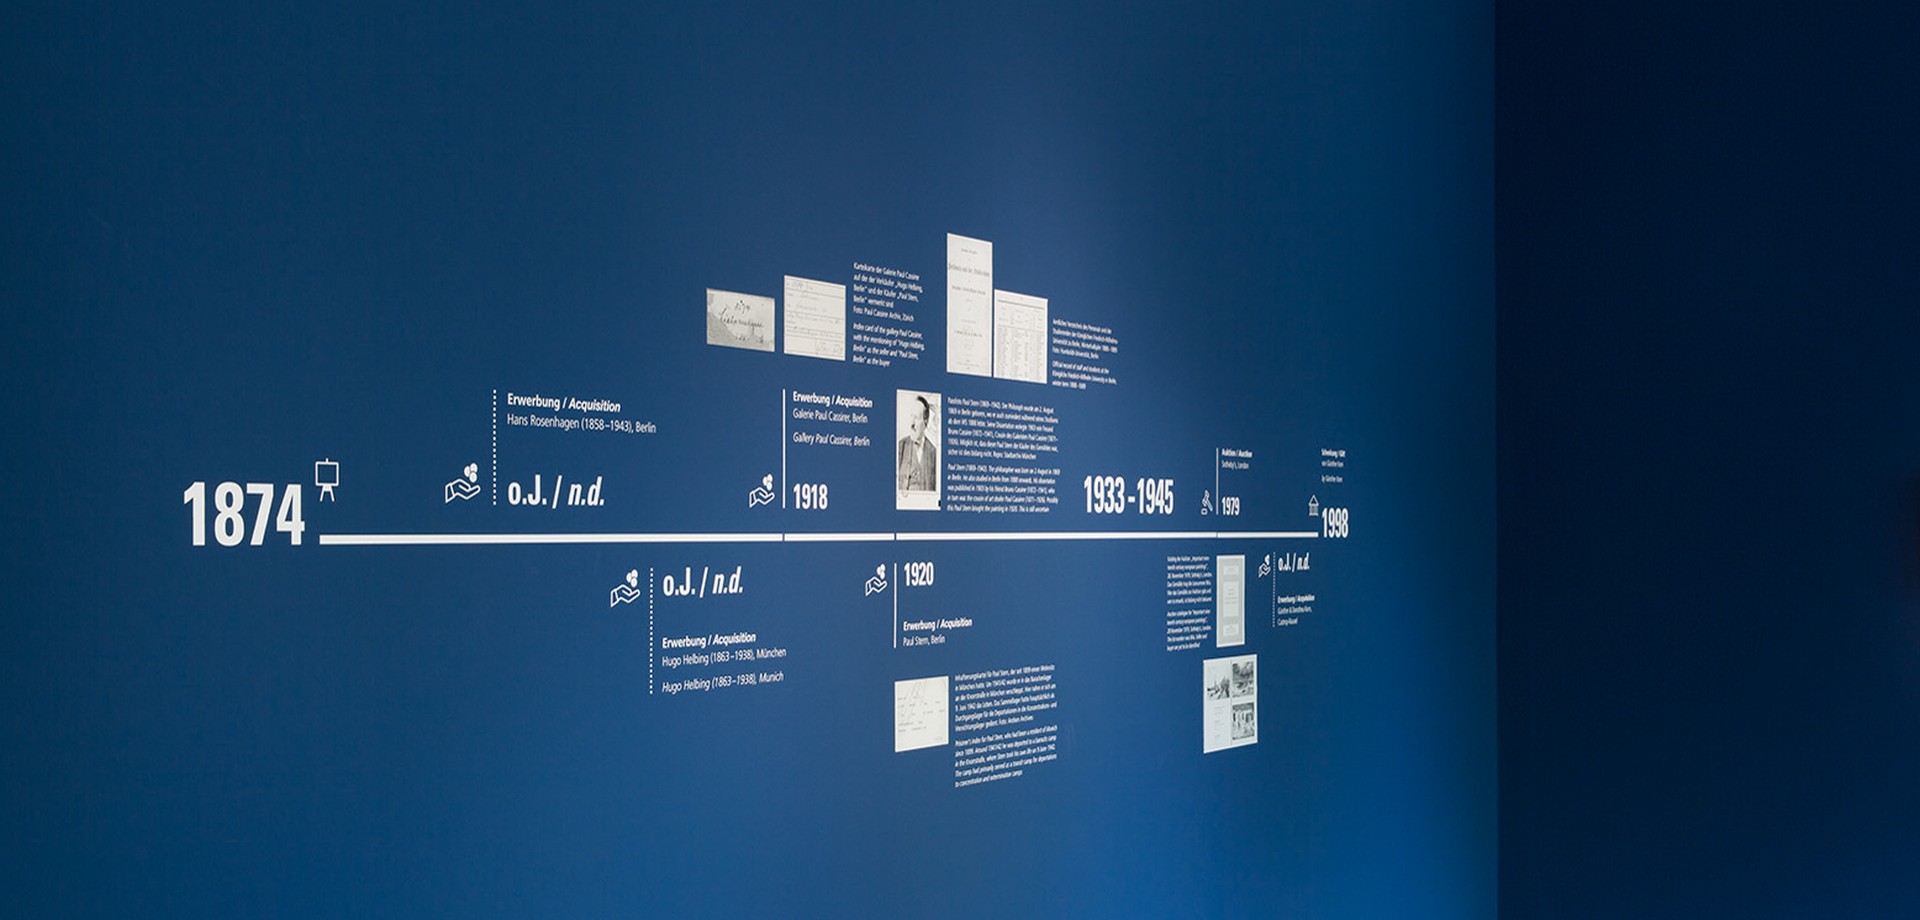 Timeline einer Provenienz. Foto LWL/ Sabine-Ahlbrand Dornseif